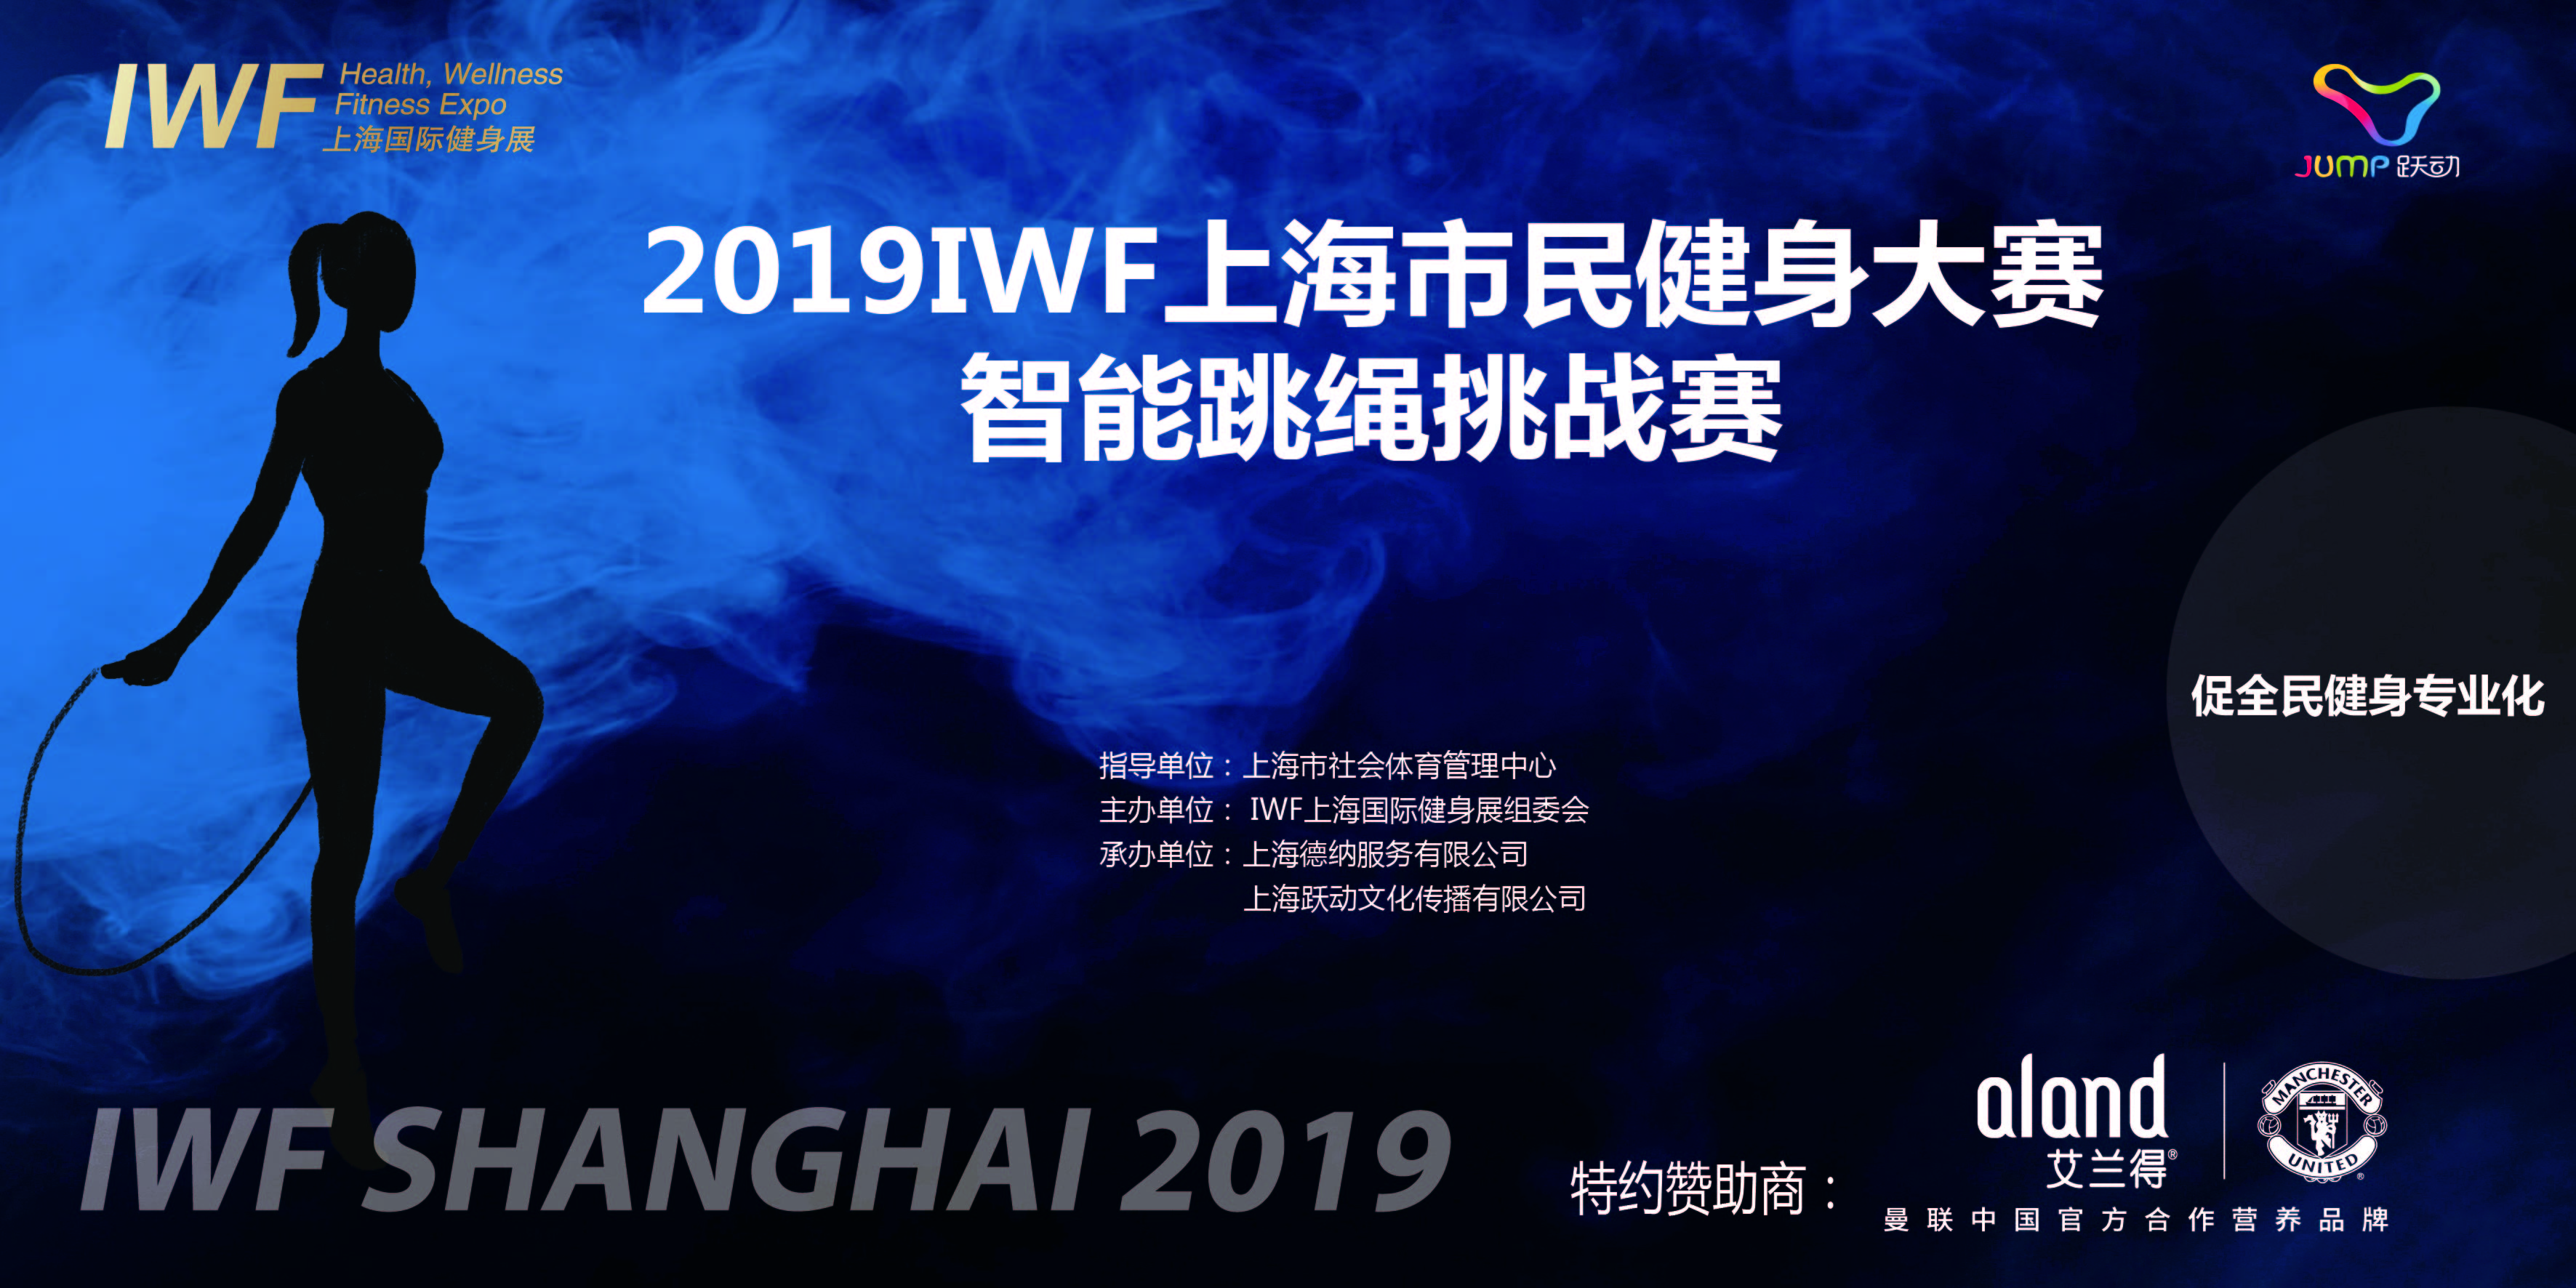 2019年IWF 智能跳绳挑战赛上海市民健身大赛智能跳绳挑战赛